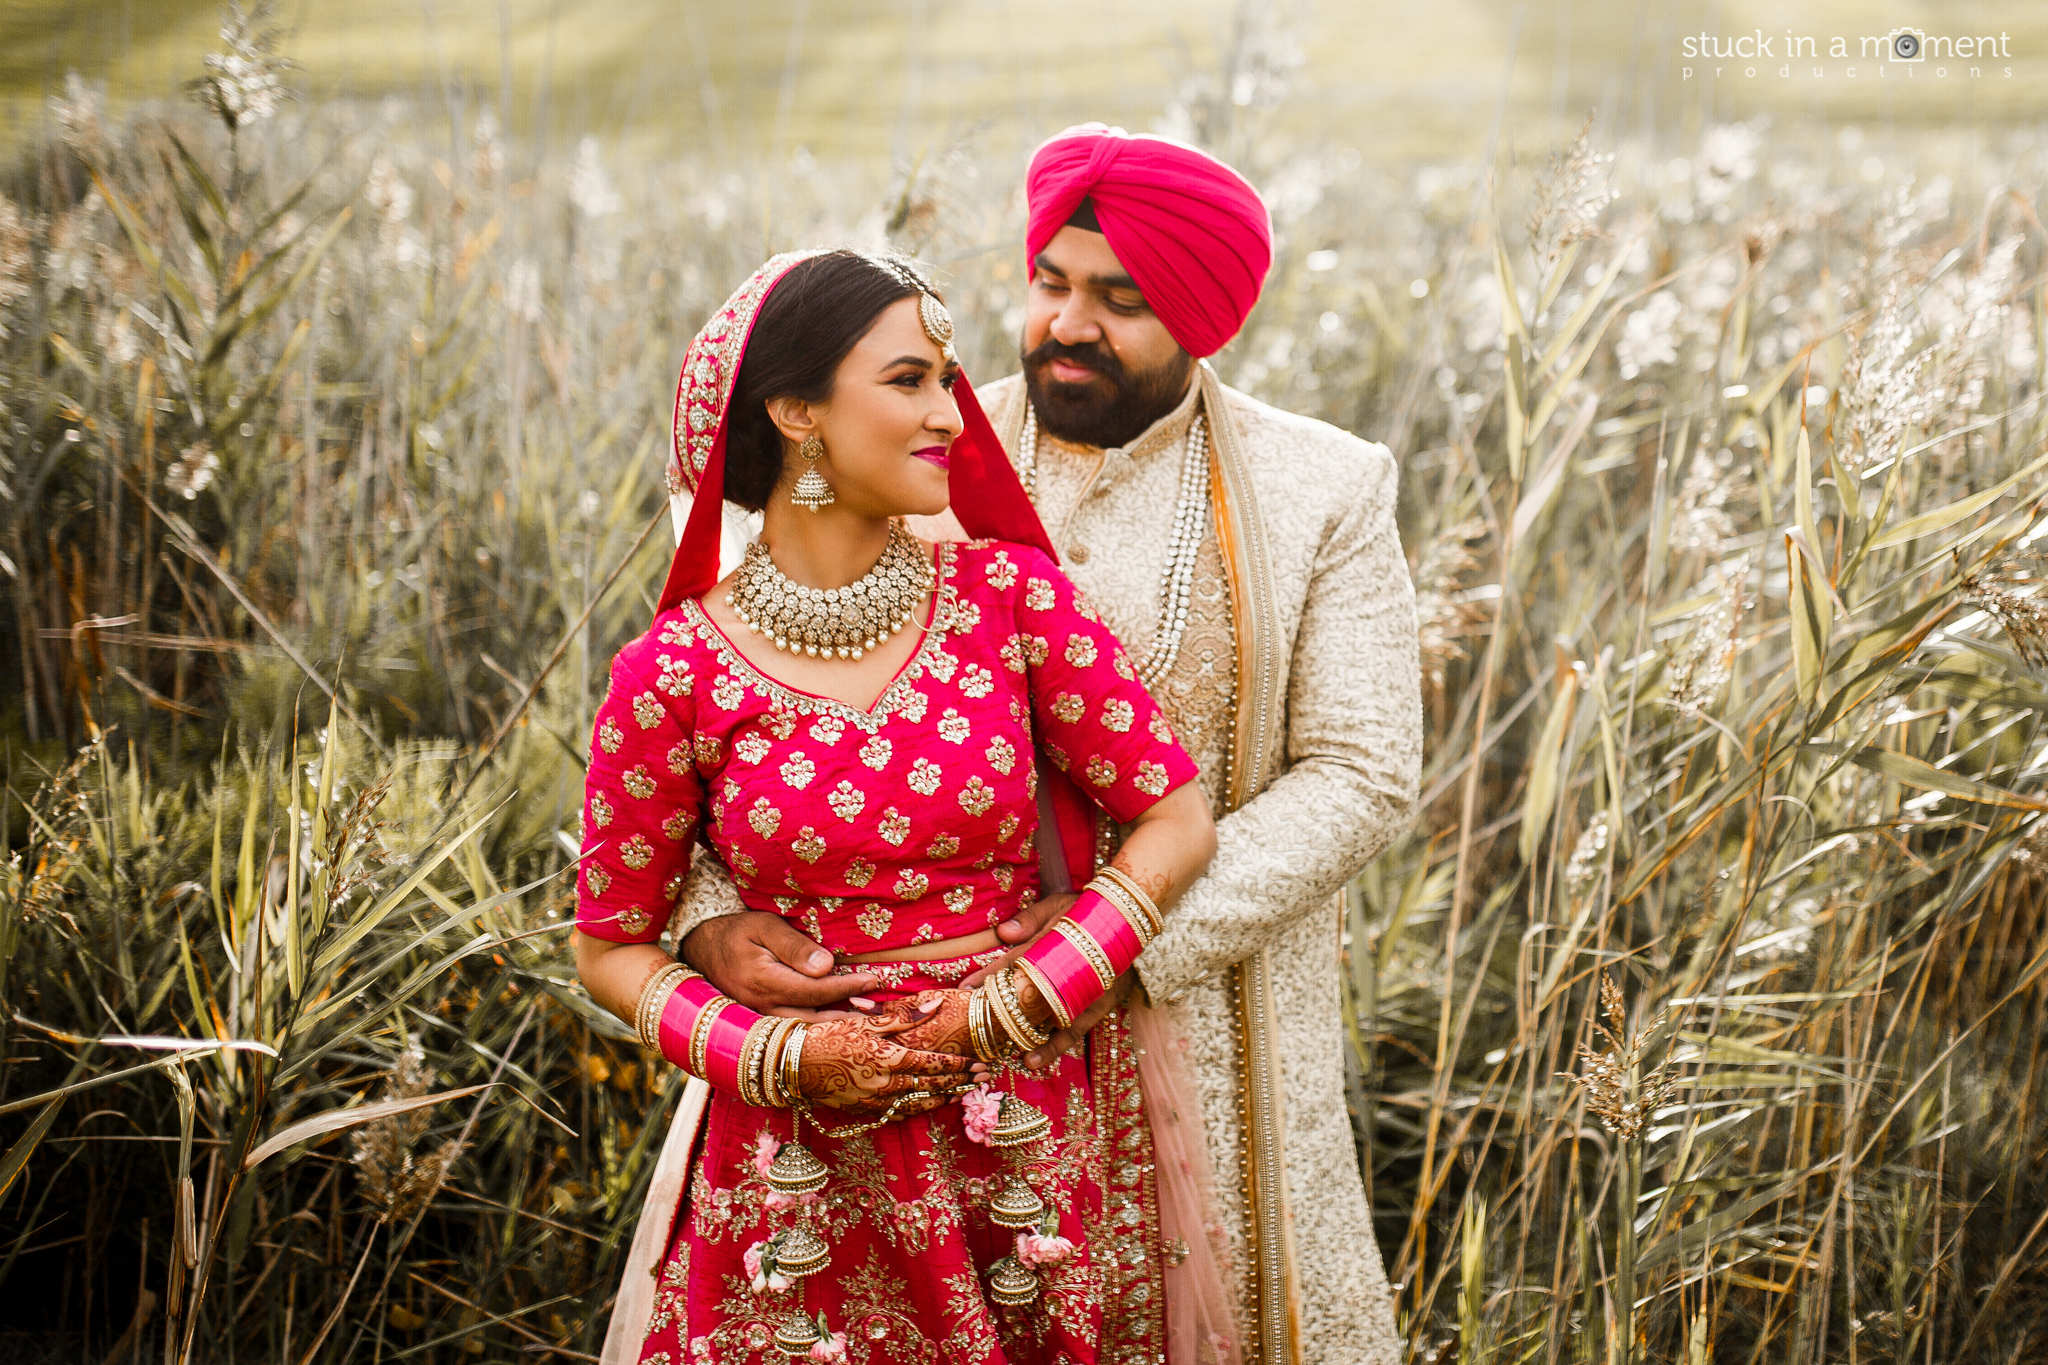 45+ Punjabi Wedding Dance Songs To Download